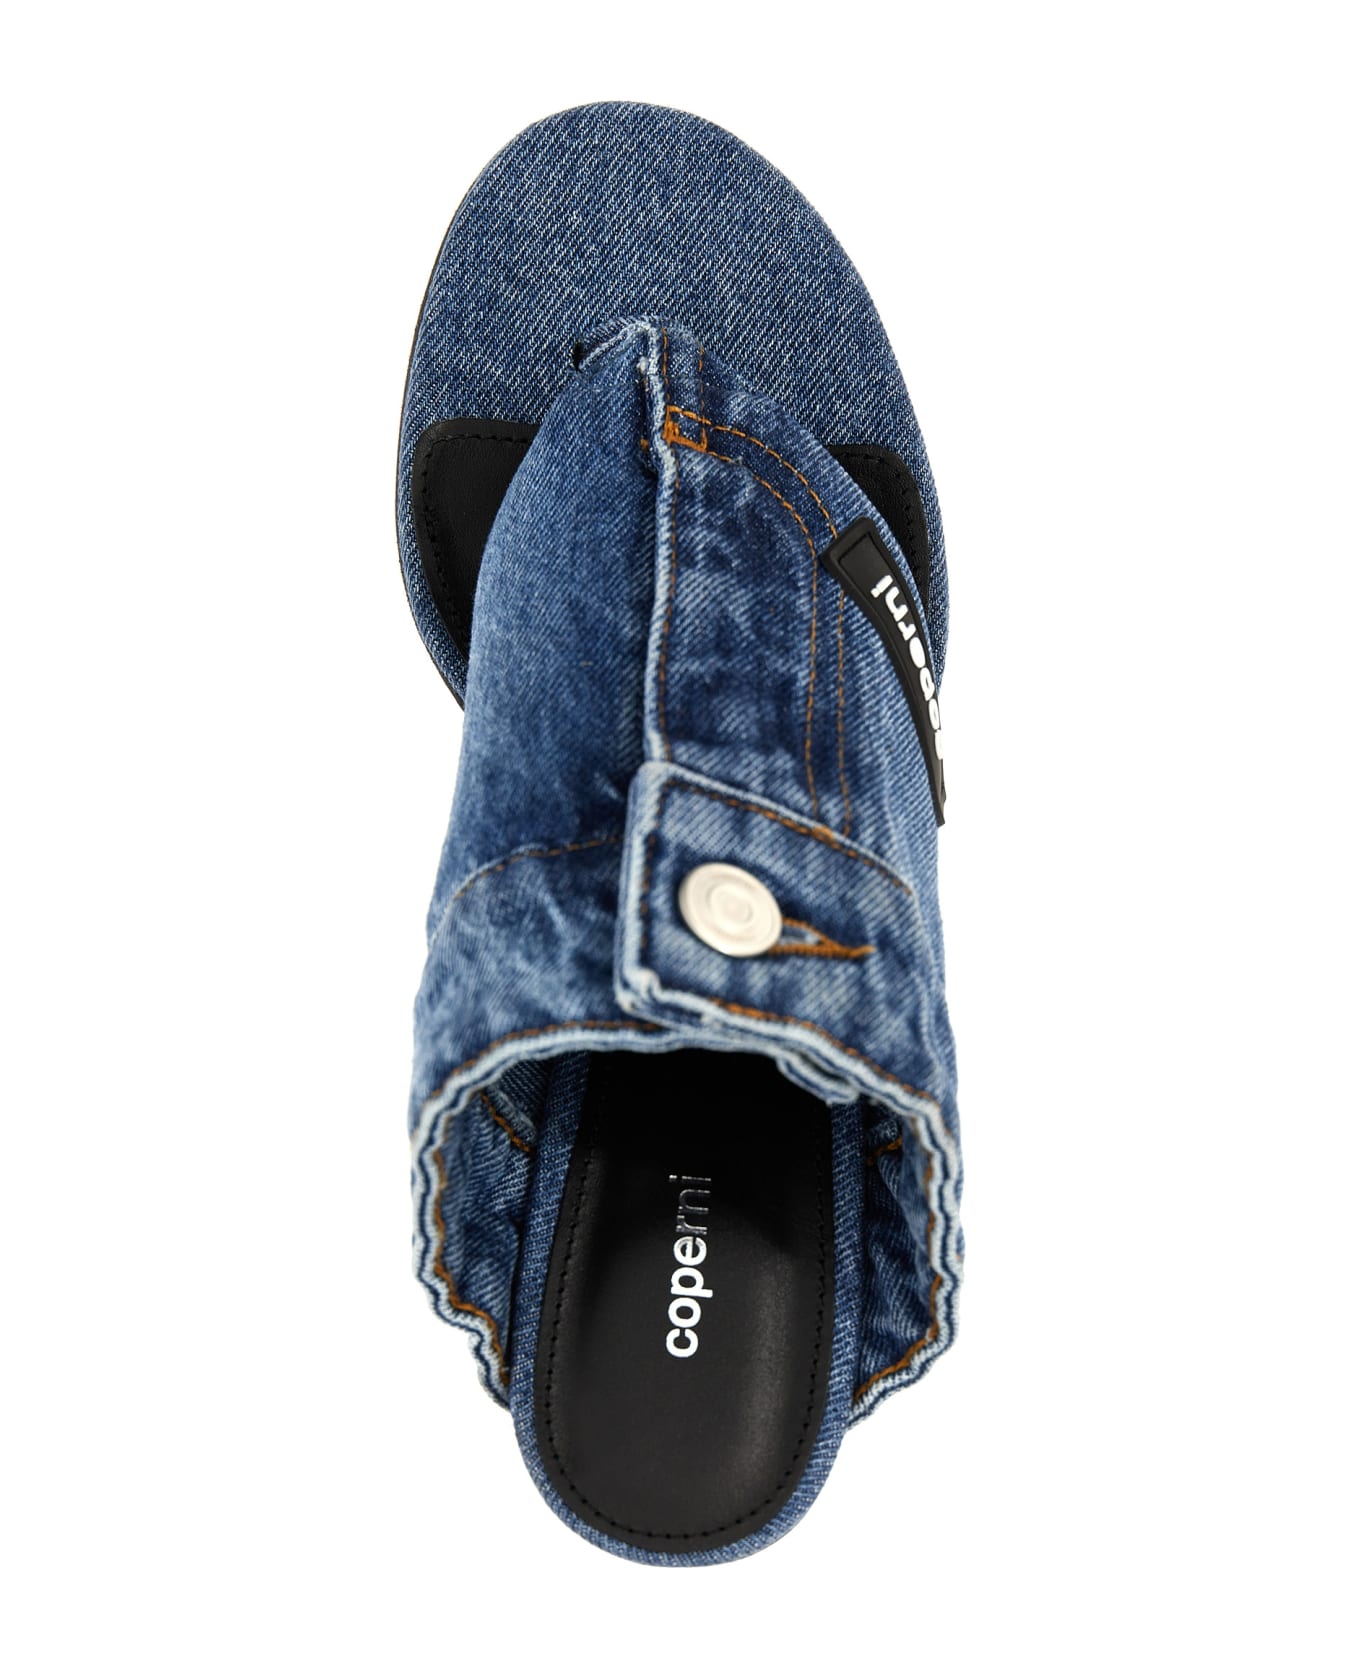 Coperni 'denim Open Thong' Sandals - Light Blue サンダル